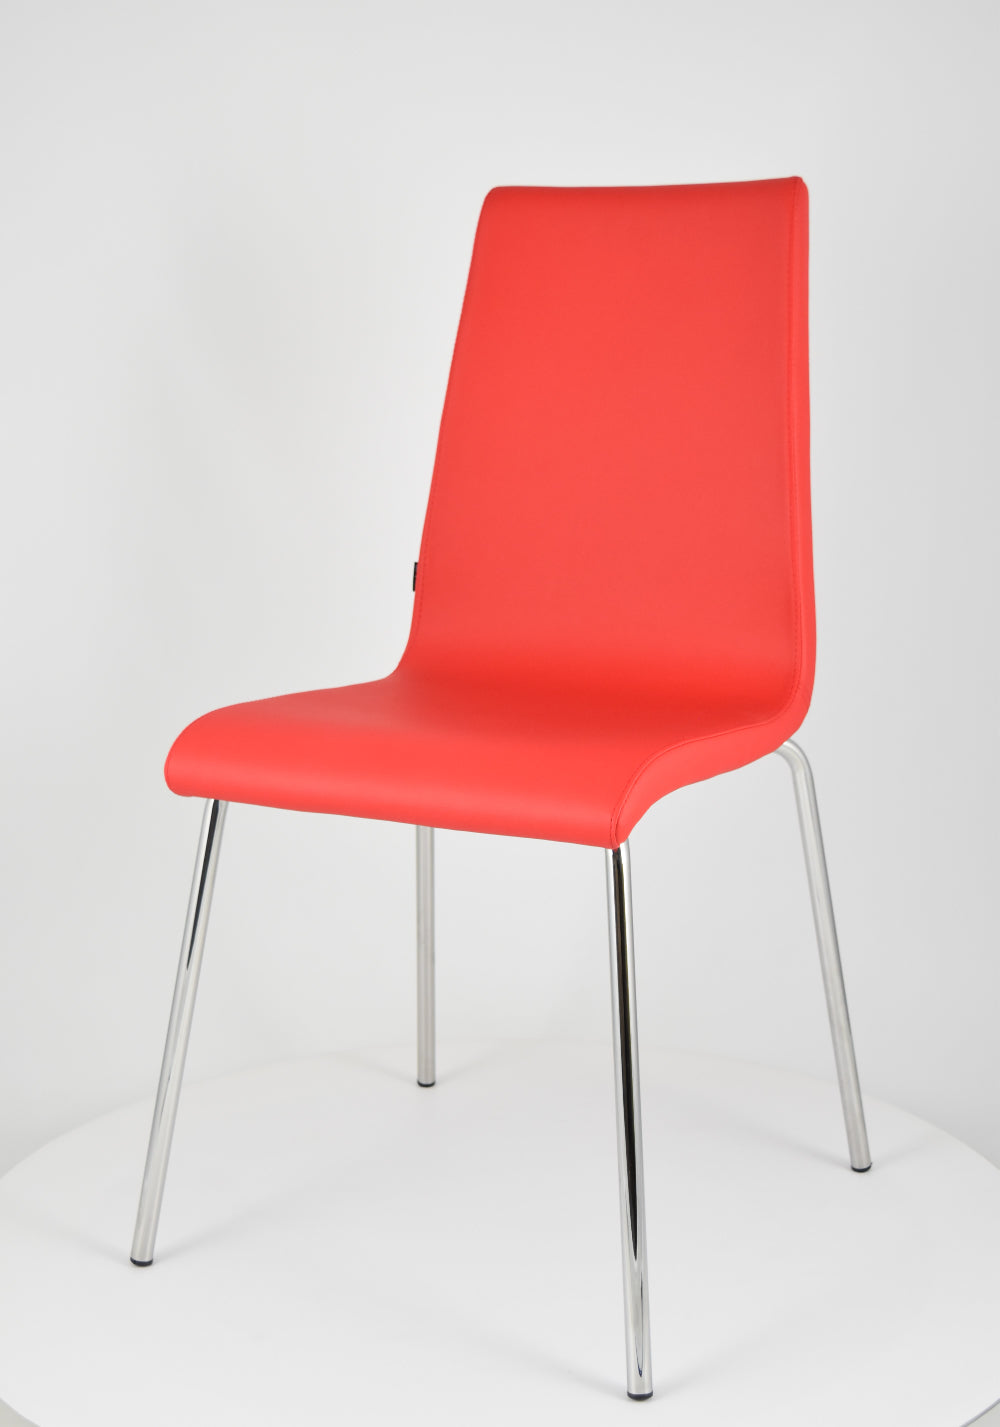 Tommychairs - Set 2 sillas Madrid con Patas de Acero Cromado y Asiento en Madera Multicapa, tapizado en Polipiel Color Rojo